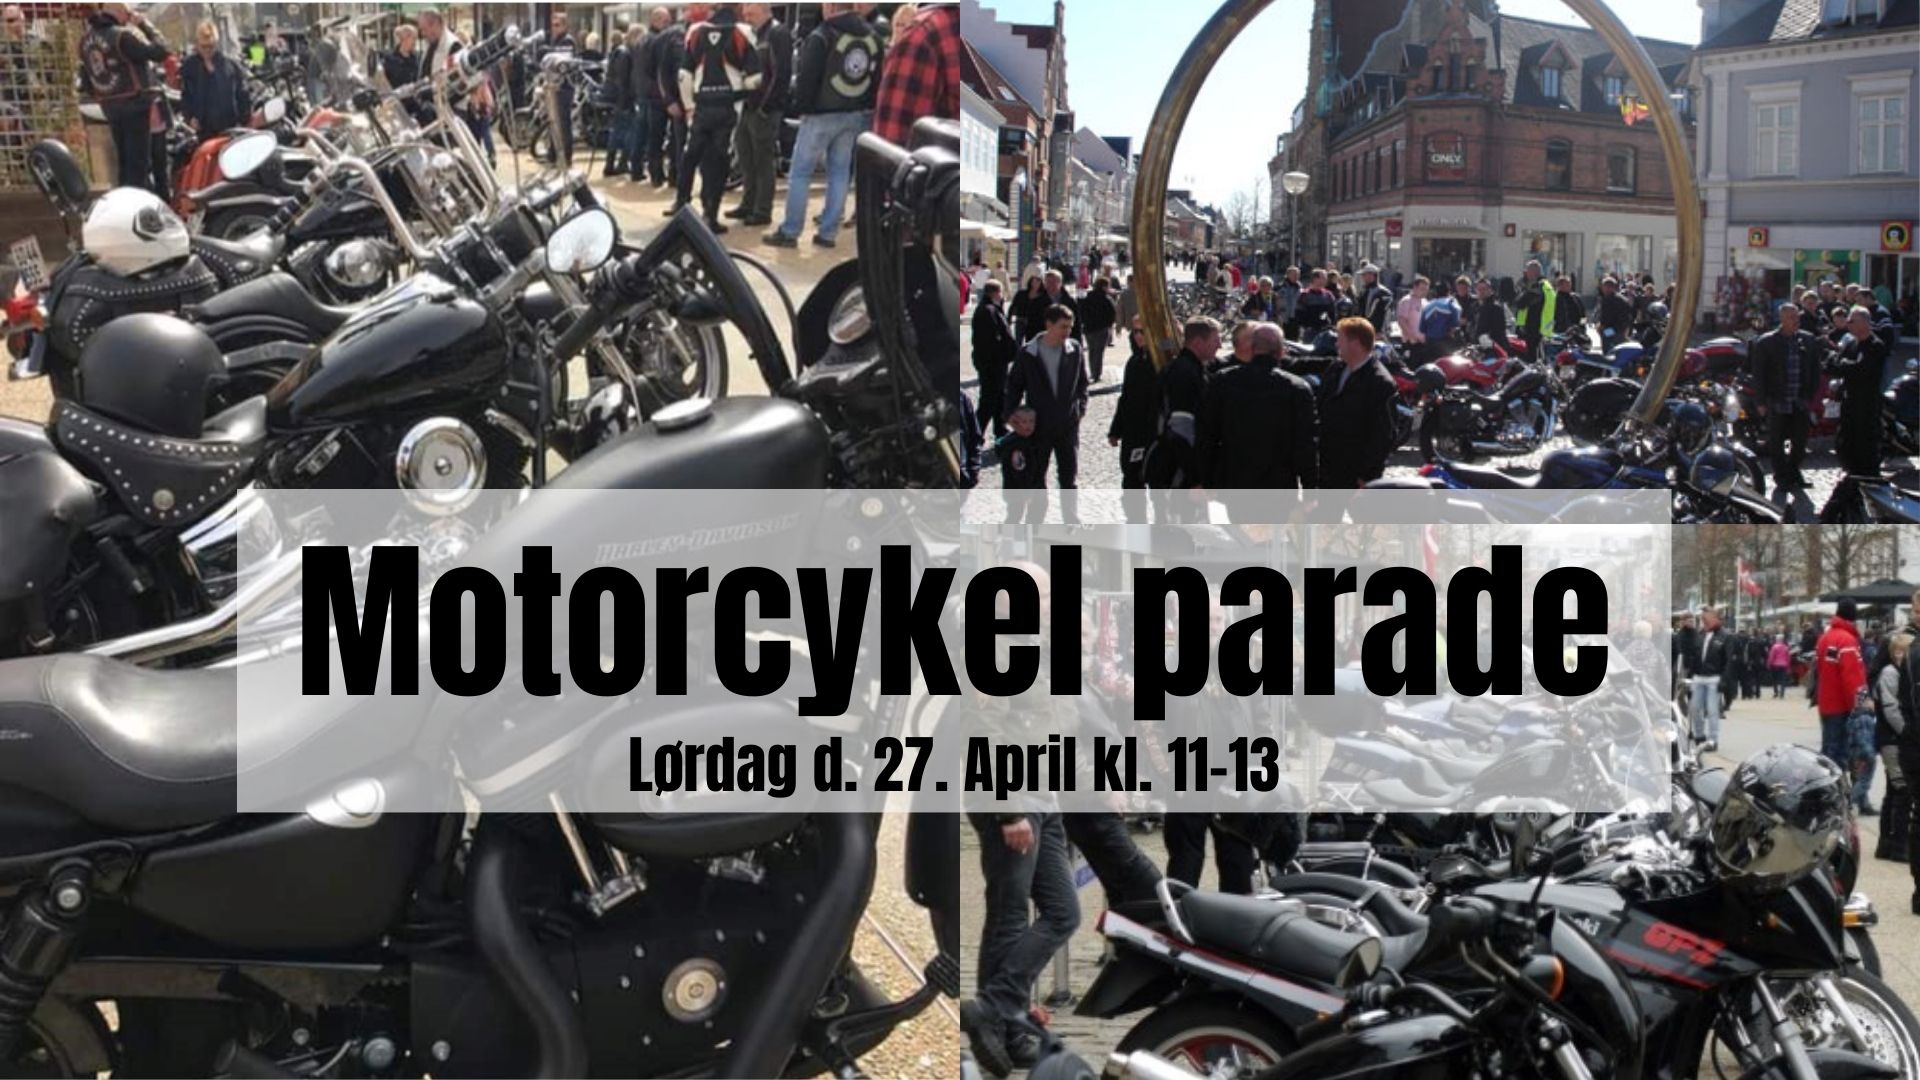 Motorcykel parade - Træf